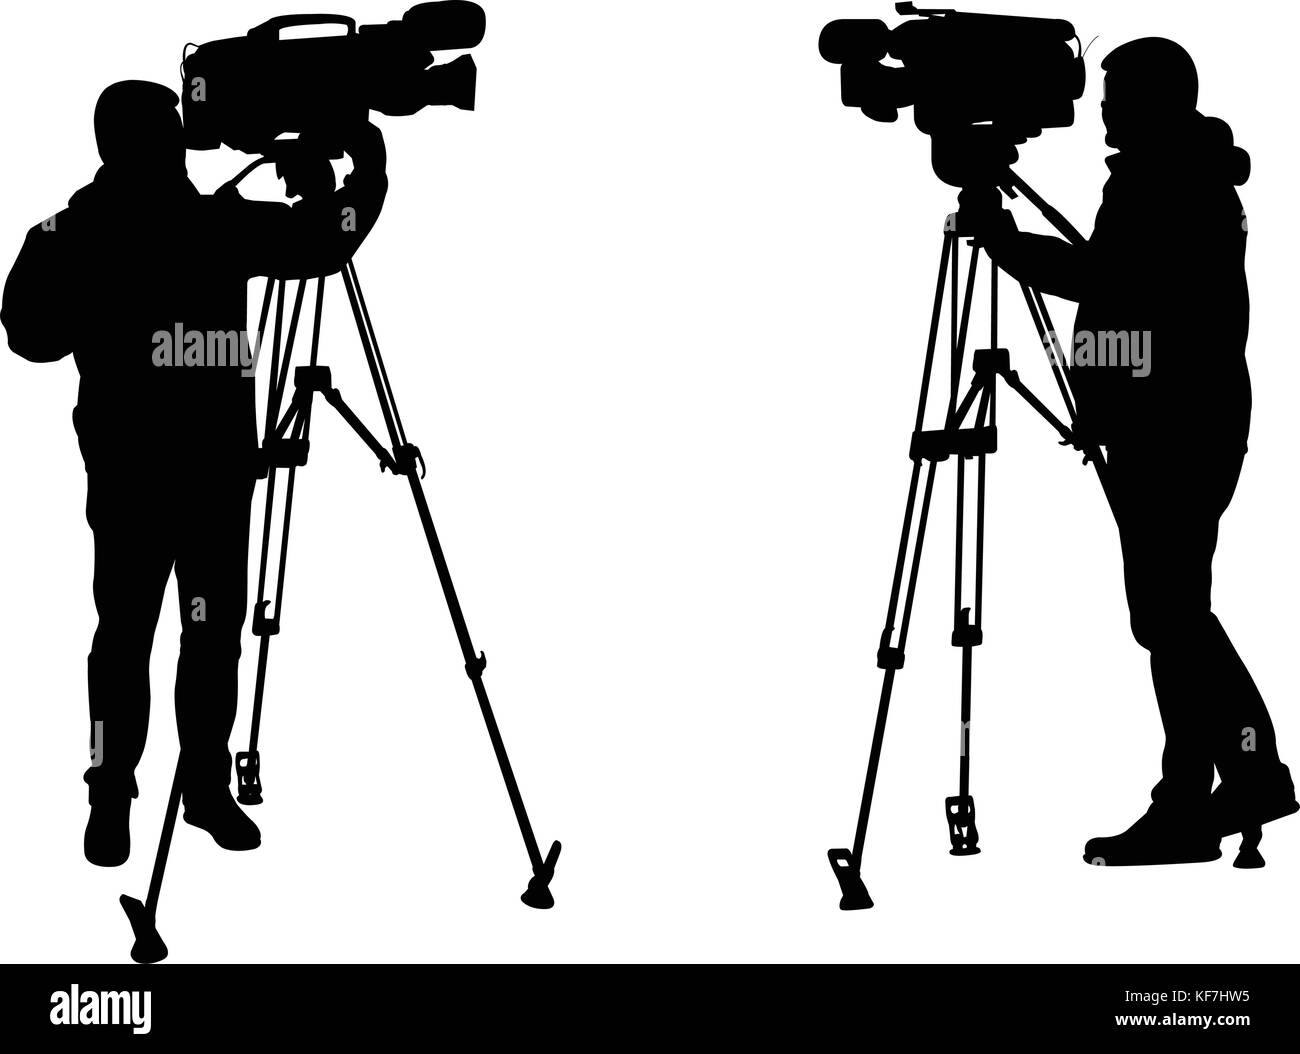 cameraman silhouettes - vector Stock Vector